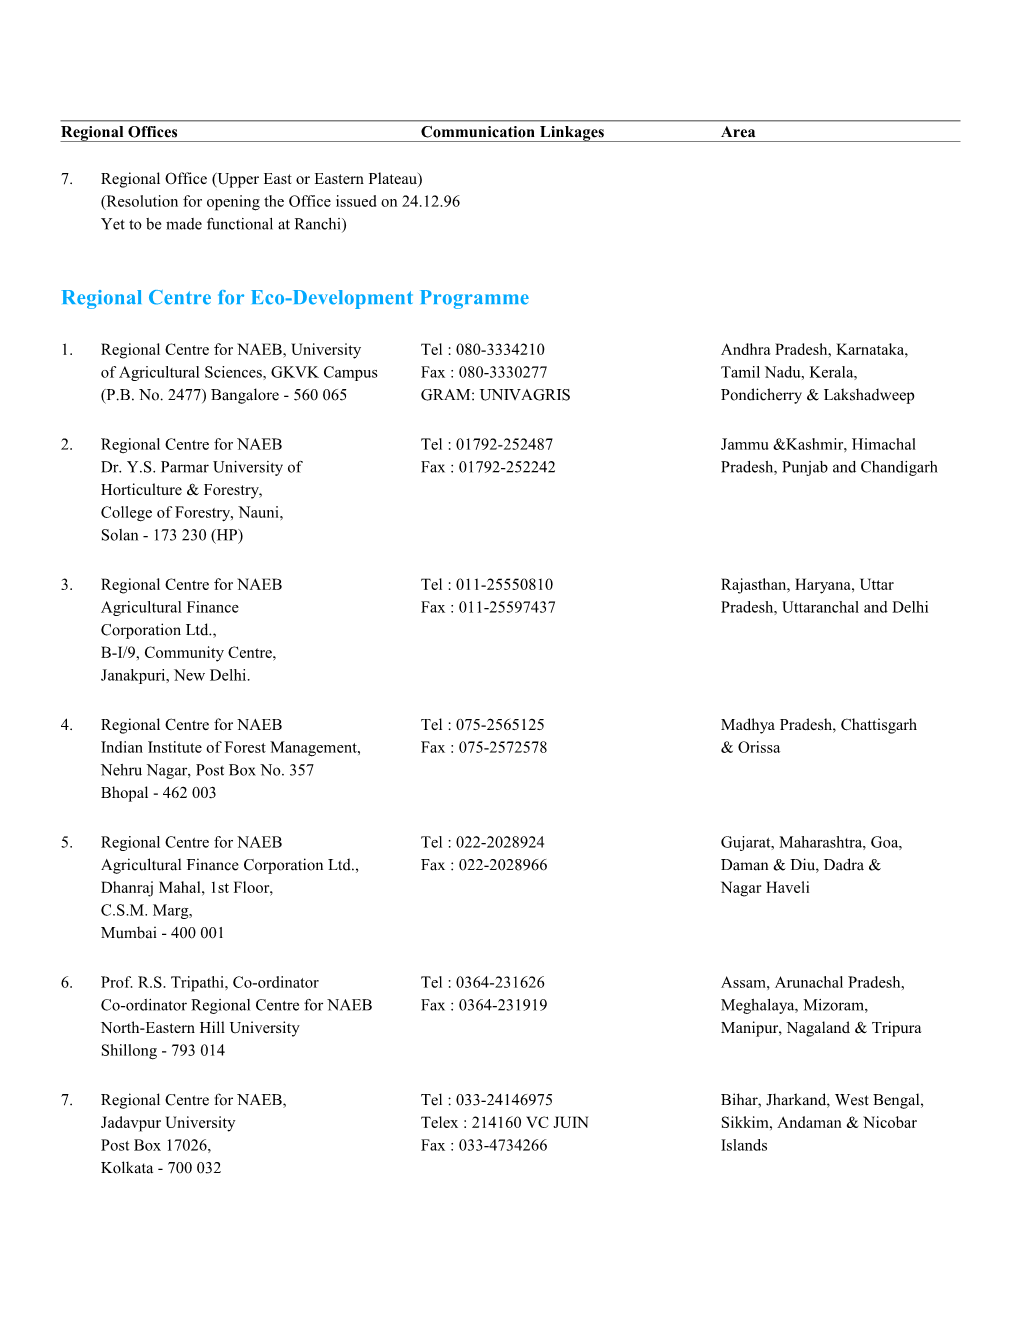 List of Regional Offices/Envis Centres/Centres of Excellence/Autonomous/Associated Agencies